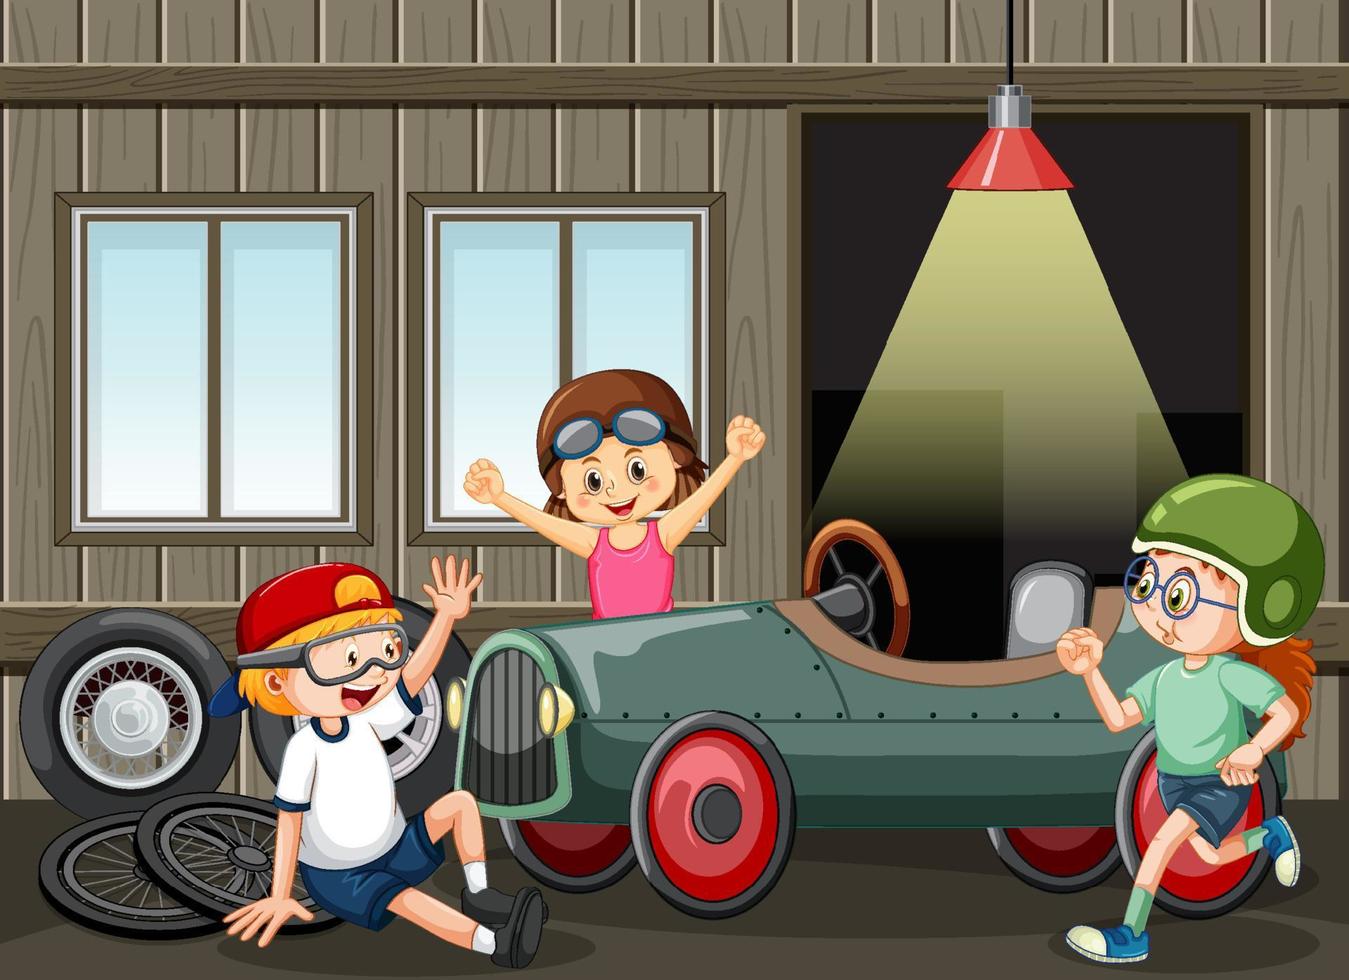 garagescen med barn som fixar en bil tillsammans vektor